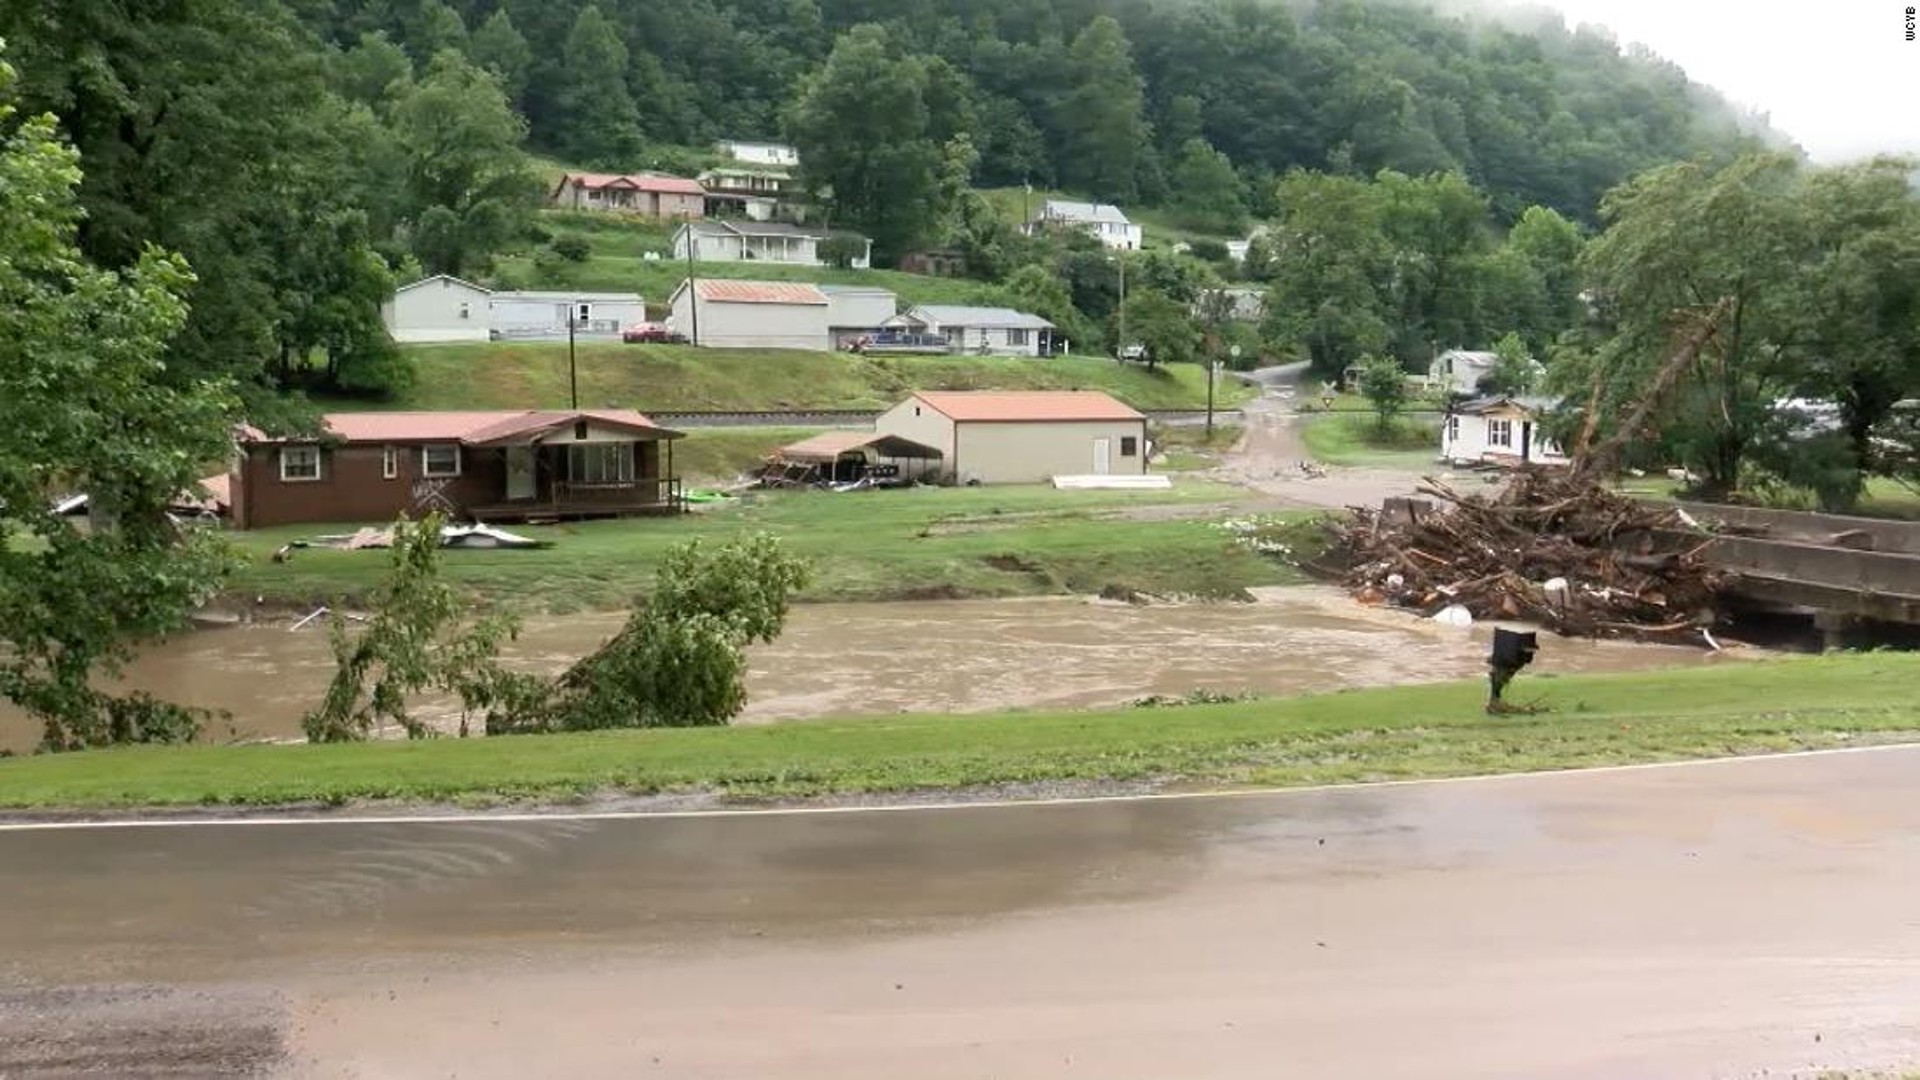 Inundaciones torrenciales en Virginia dejan más de 40 desaparecidos, tras arrasar casas y bloquear carreteras